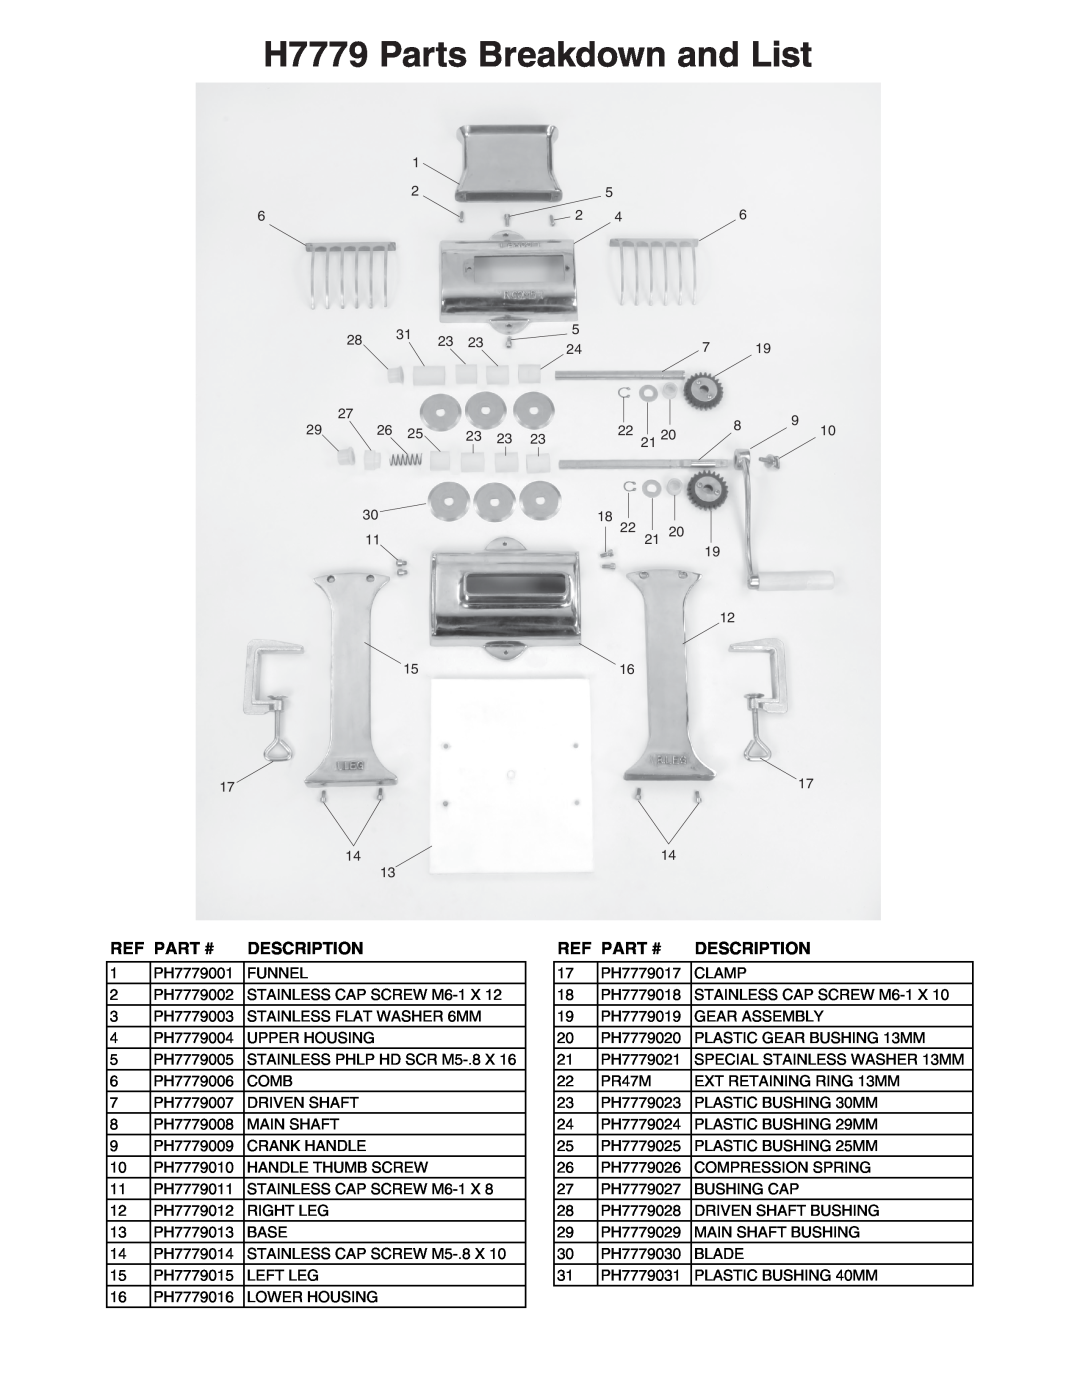 Grizzly instruction sheet H7779 Parts Breakdown and List, Ref Part #, Description 